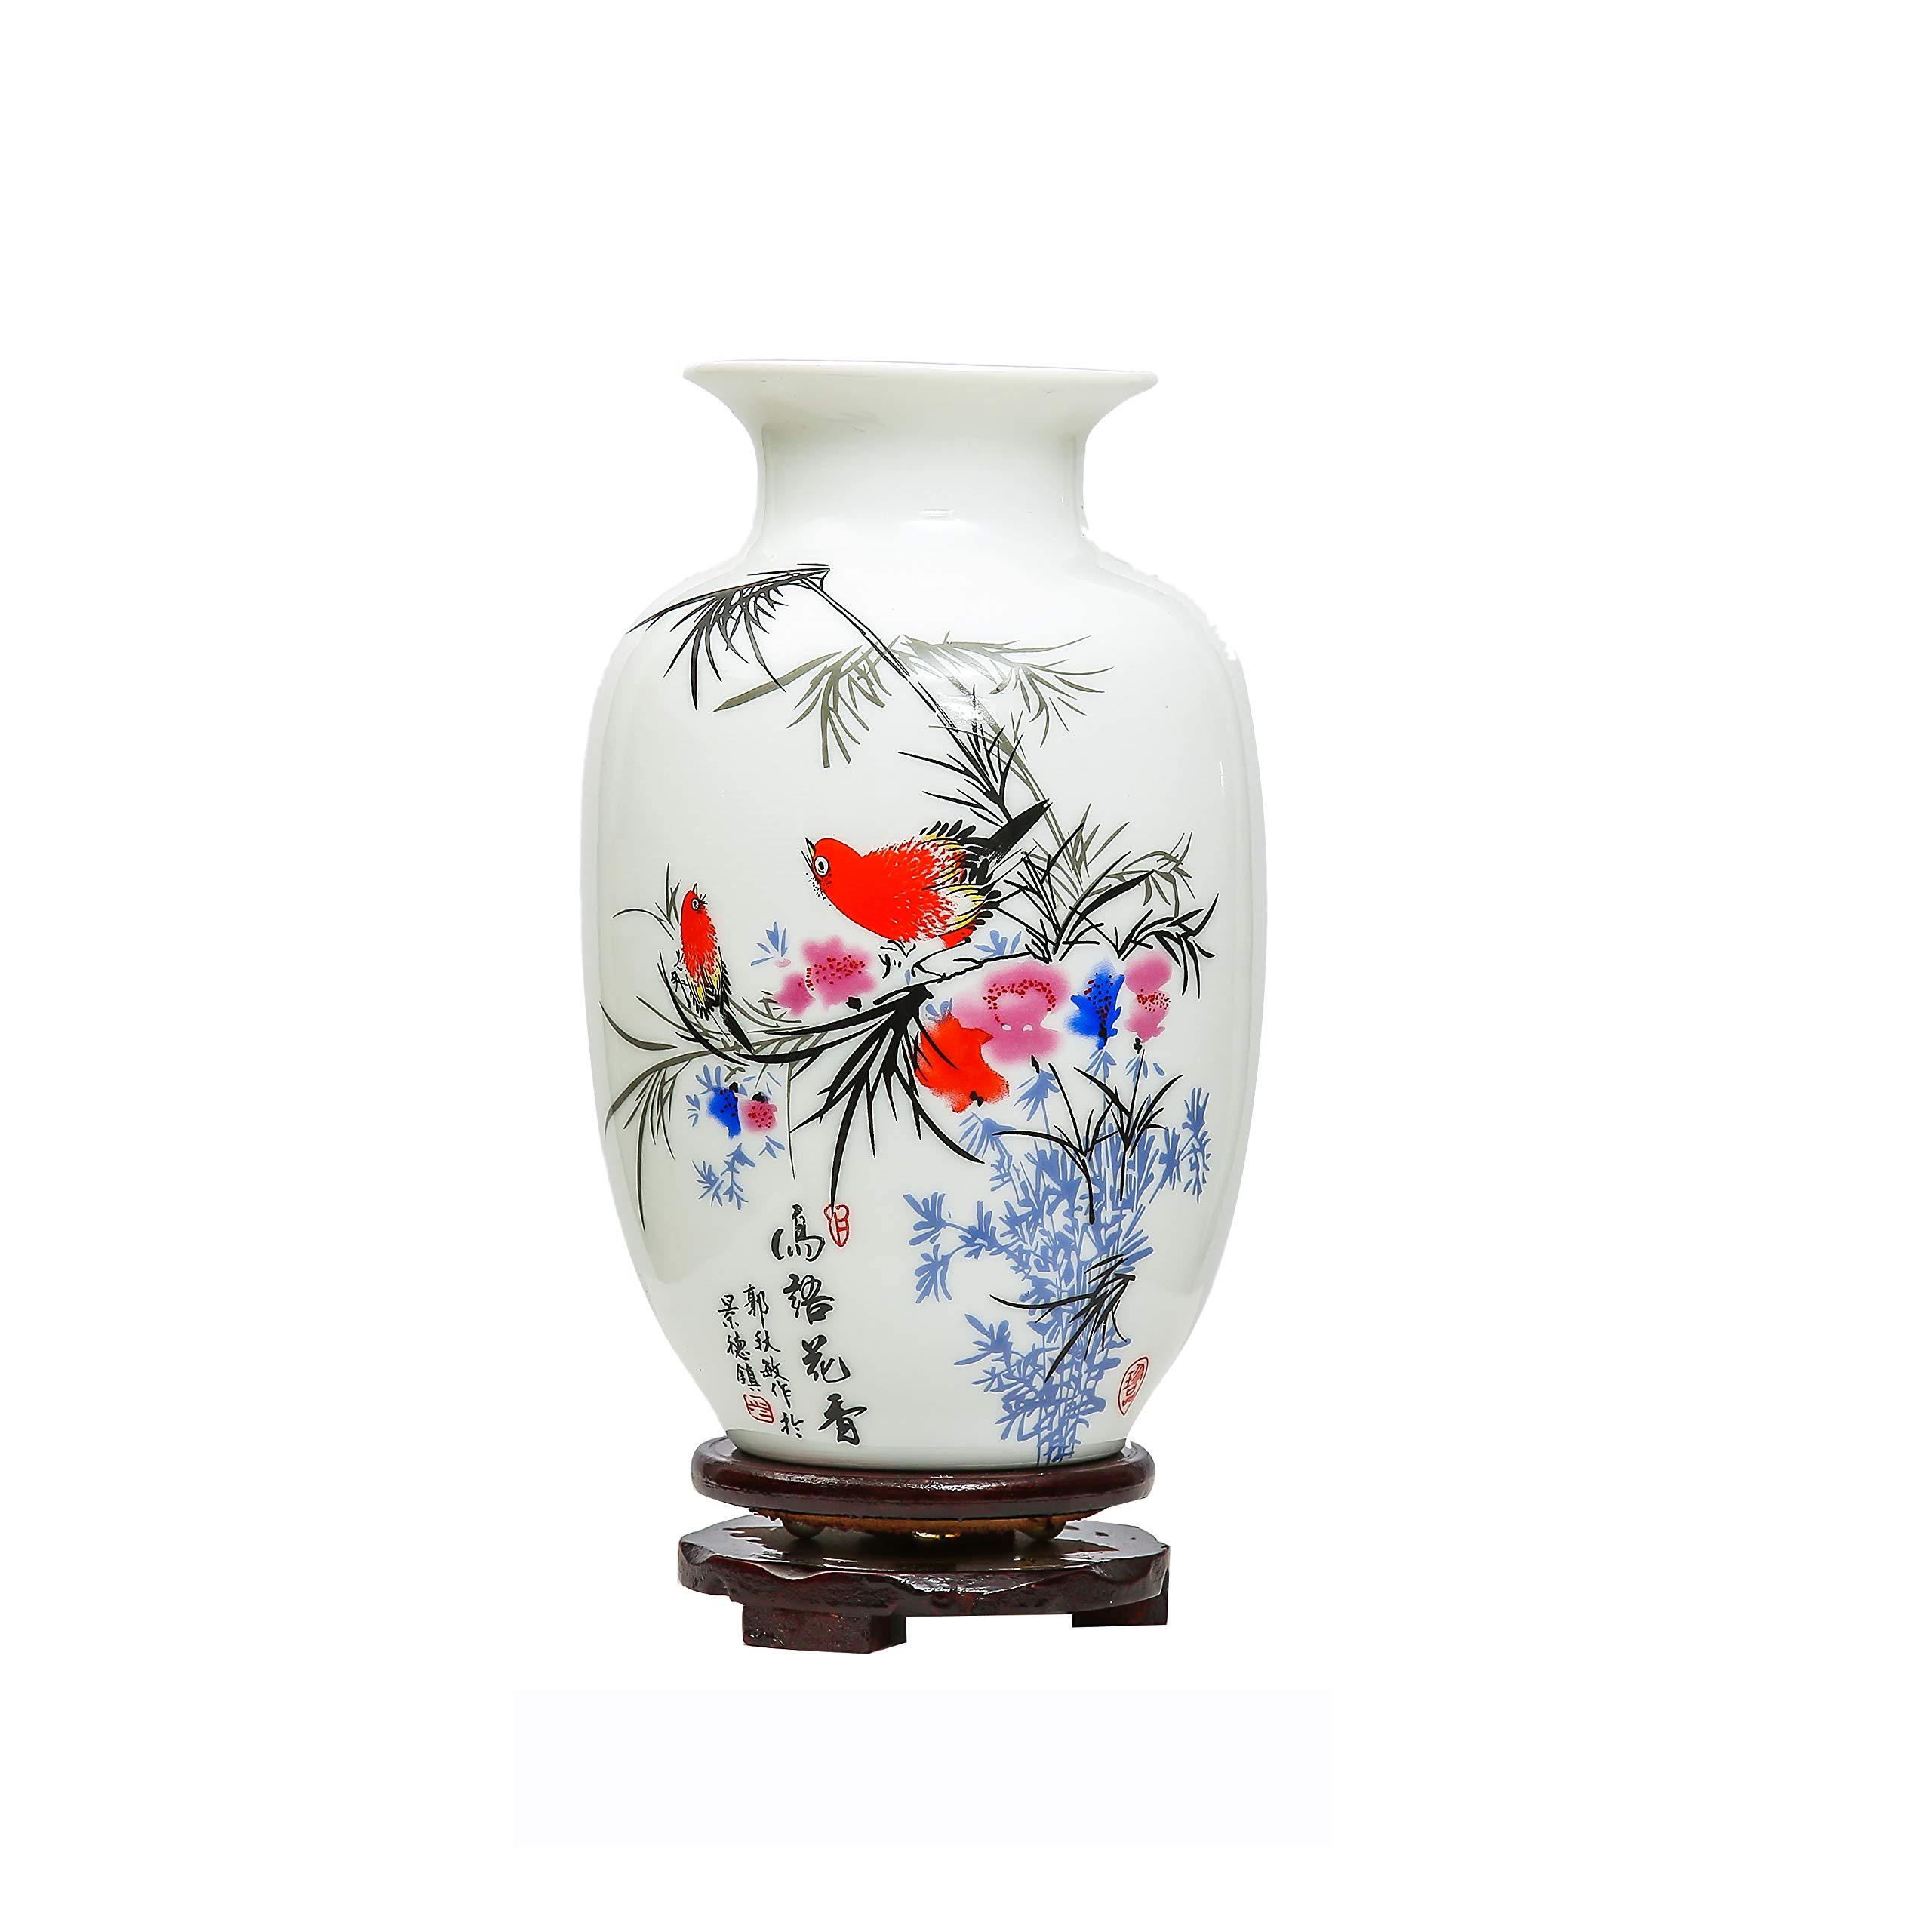 bon prix Chinois Oiseaux et Fleurs en Céramique Vase, Jingdezhen Petit Vase en Céramique,Vase Art Déco pour Ménage, Bureau, Mariage, Fête,Blanc x7bs8HuJ4 stylé 